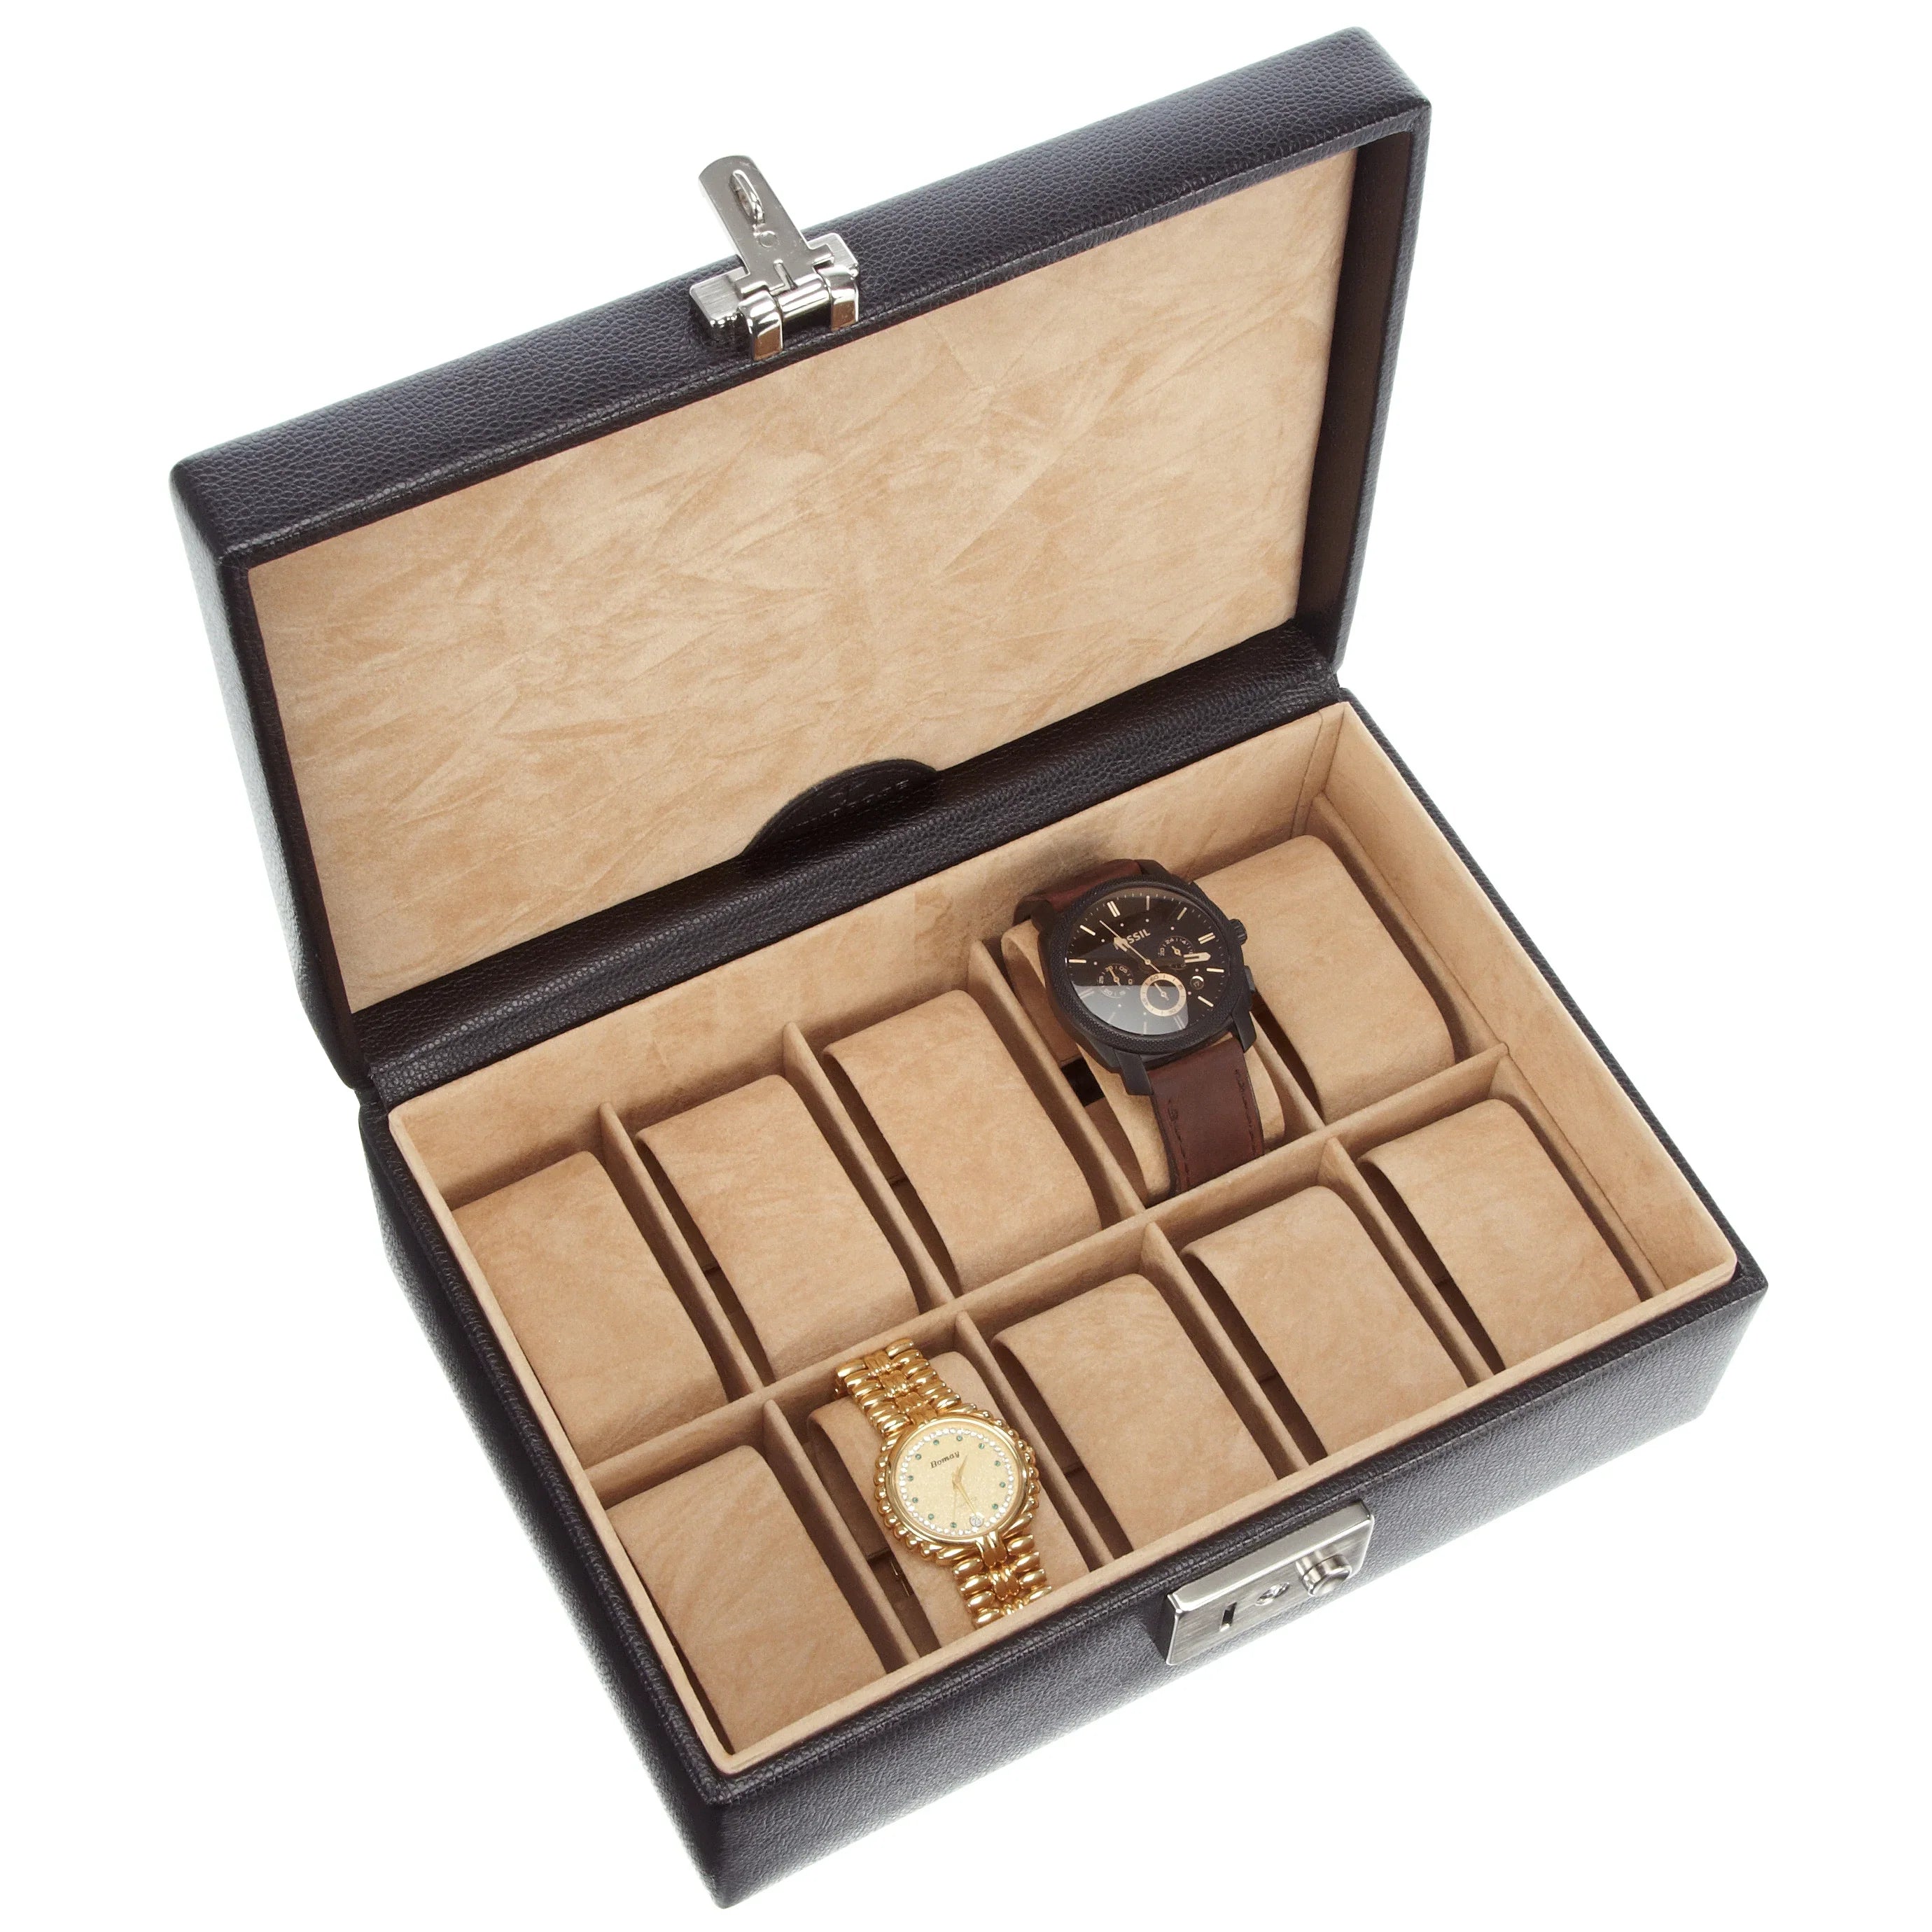 Windrose Beluga Uhrenkassette für 10 Uhren 24 cm - schwarz